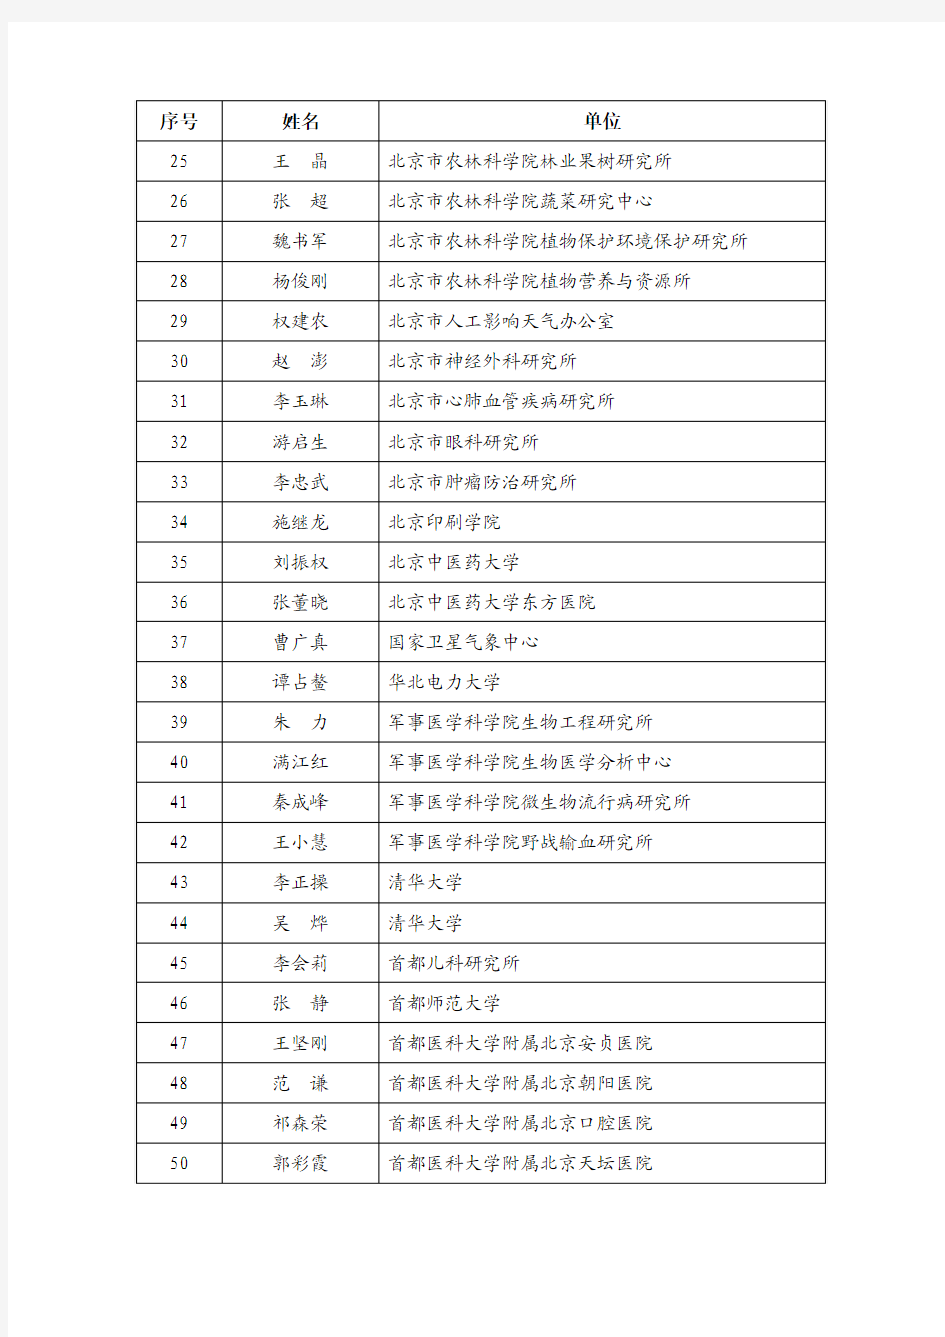 关于公布2010年度北京市科技新星计划入选人员名单的通知